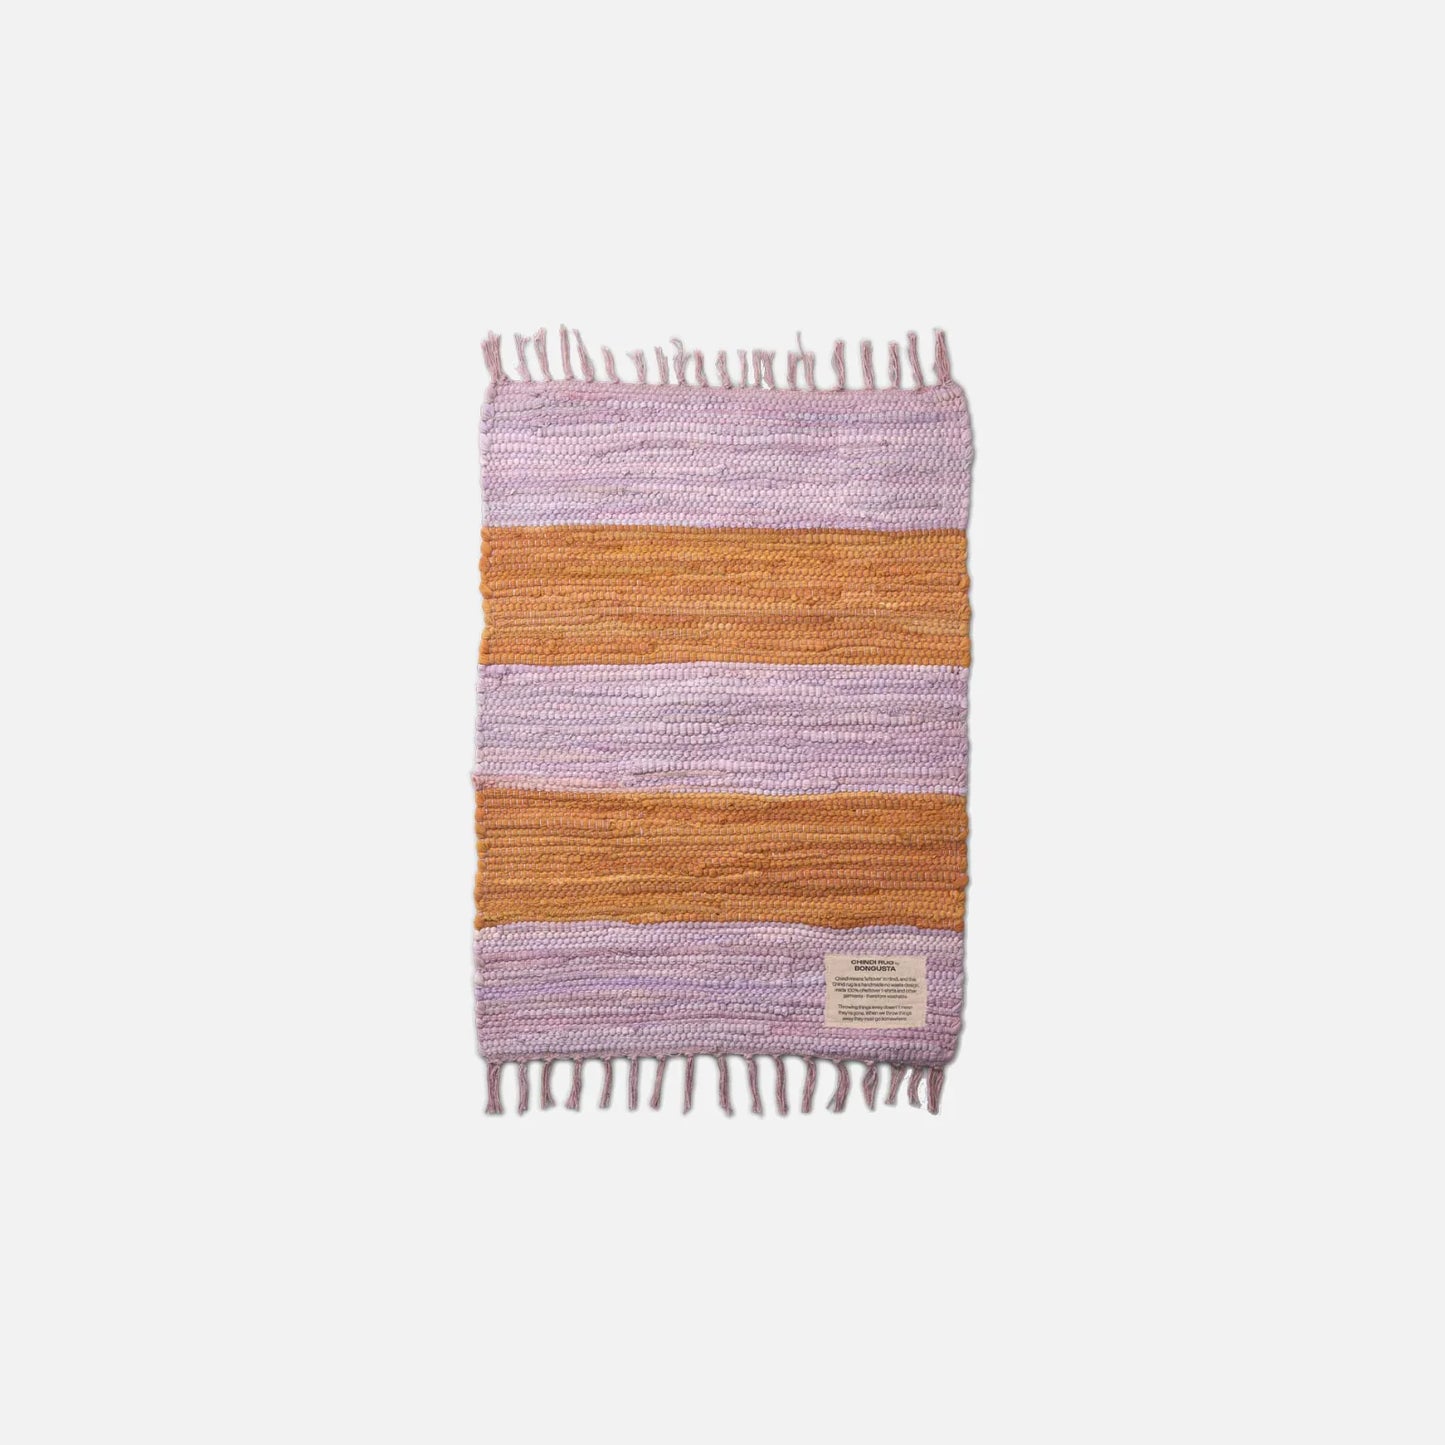 Chindi tæppe fra Bongusta i 45x60 cm i Lilac/Golden